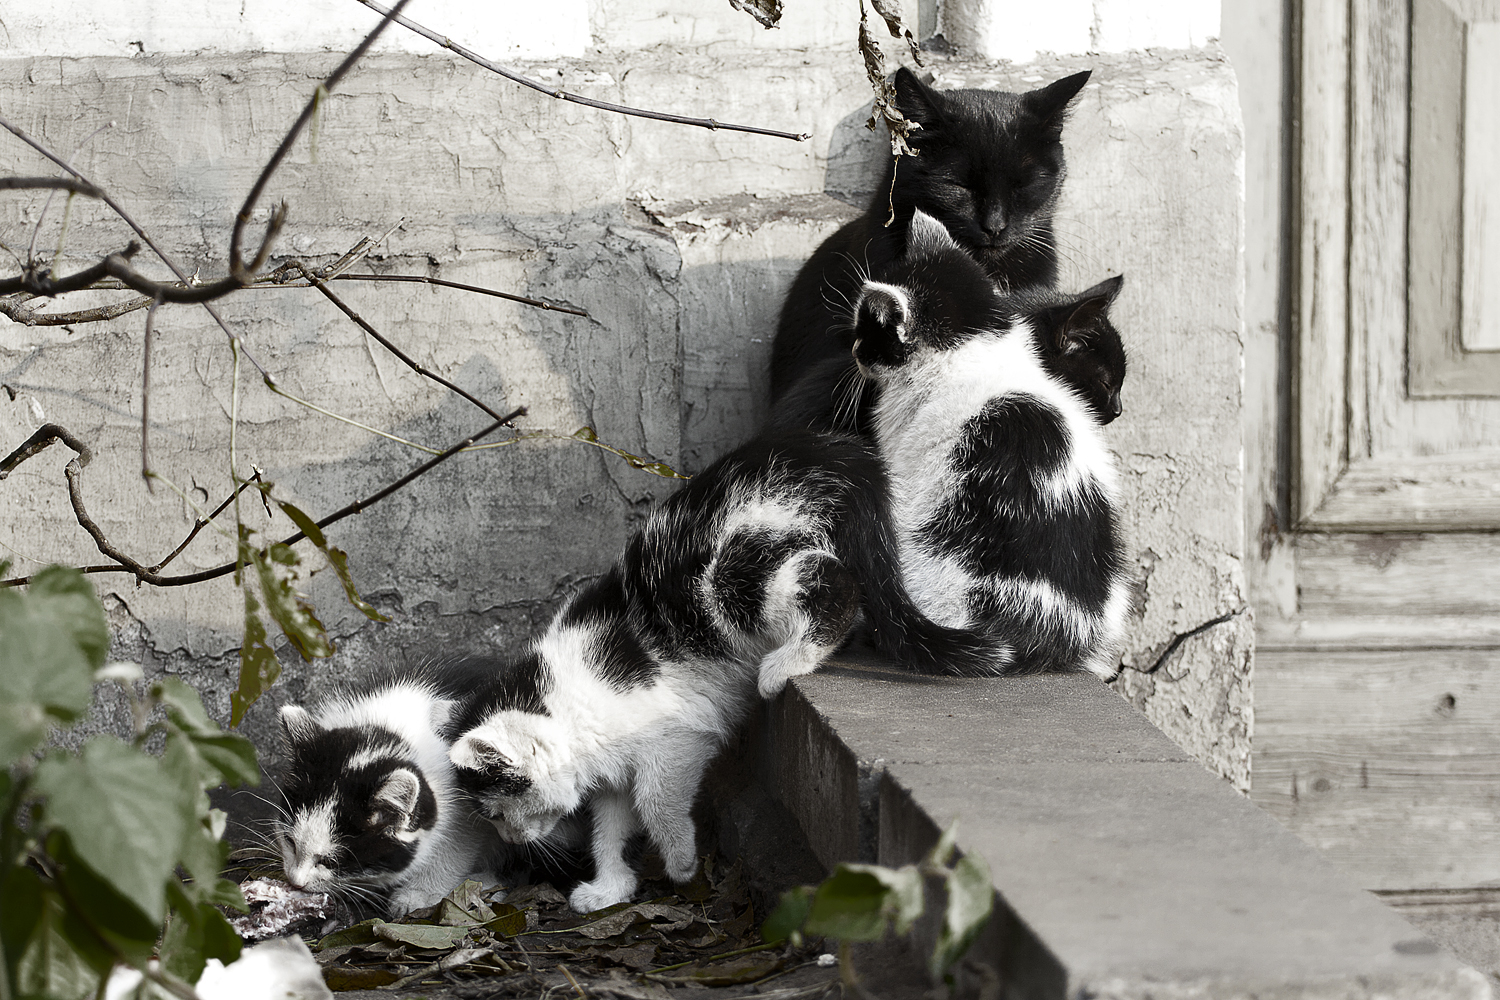 Cat Family Via @Atisgailis